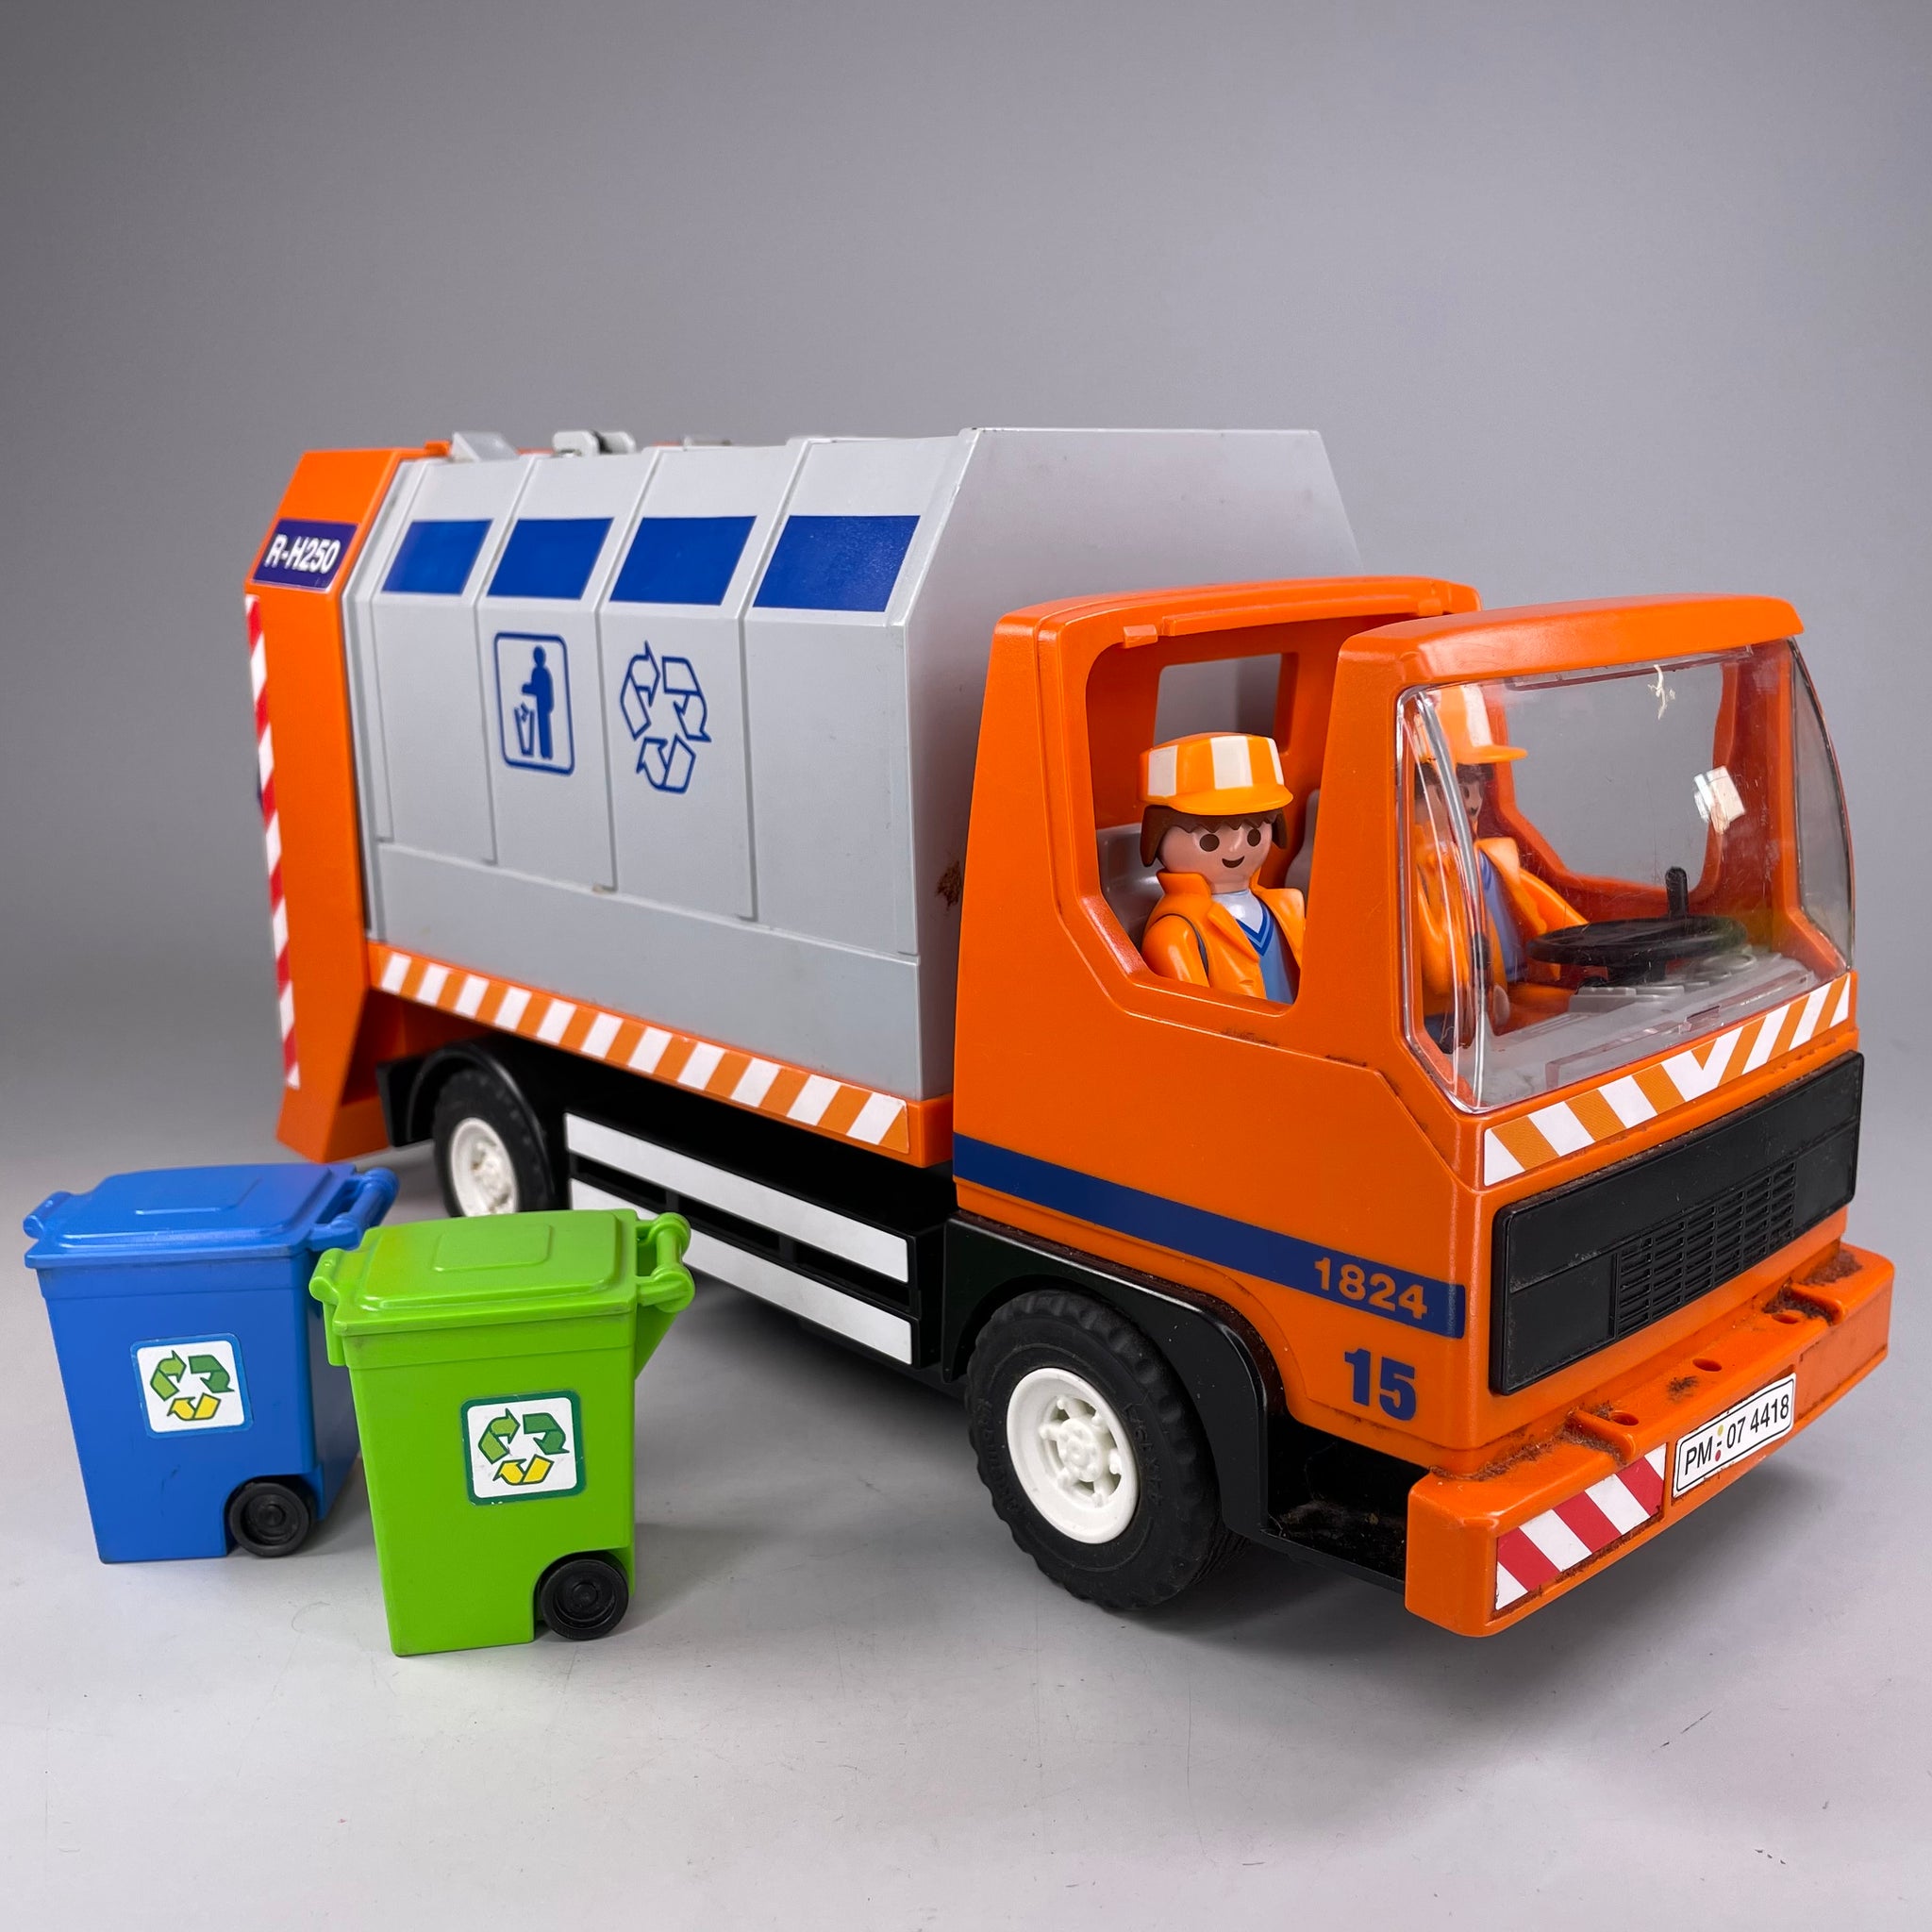 Playmobil Müllabfuhr, Müllwagen, City Recycling, Mülleimer LKW